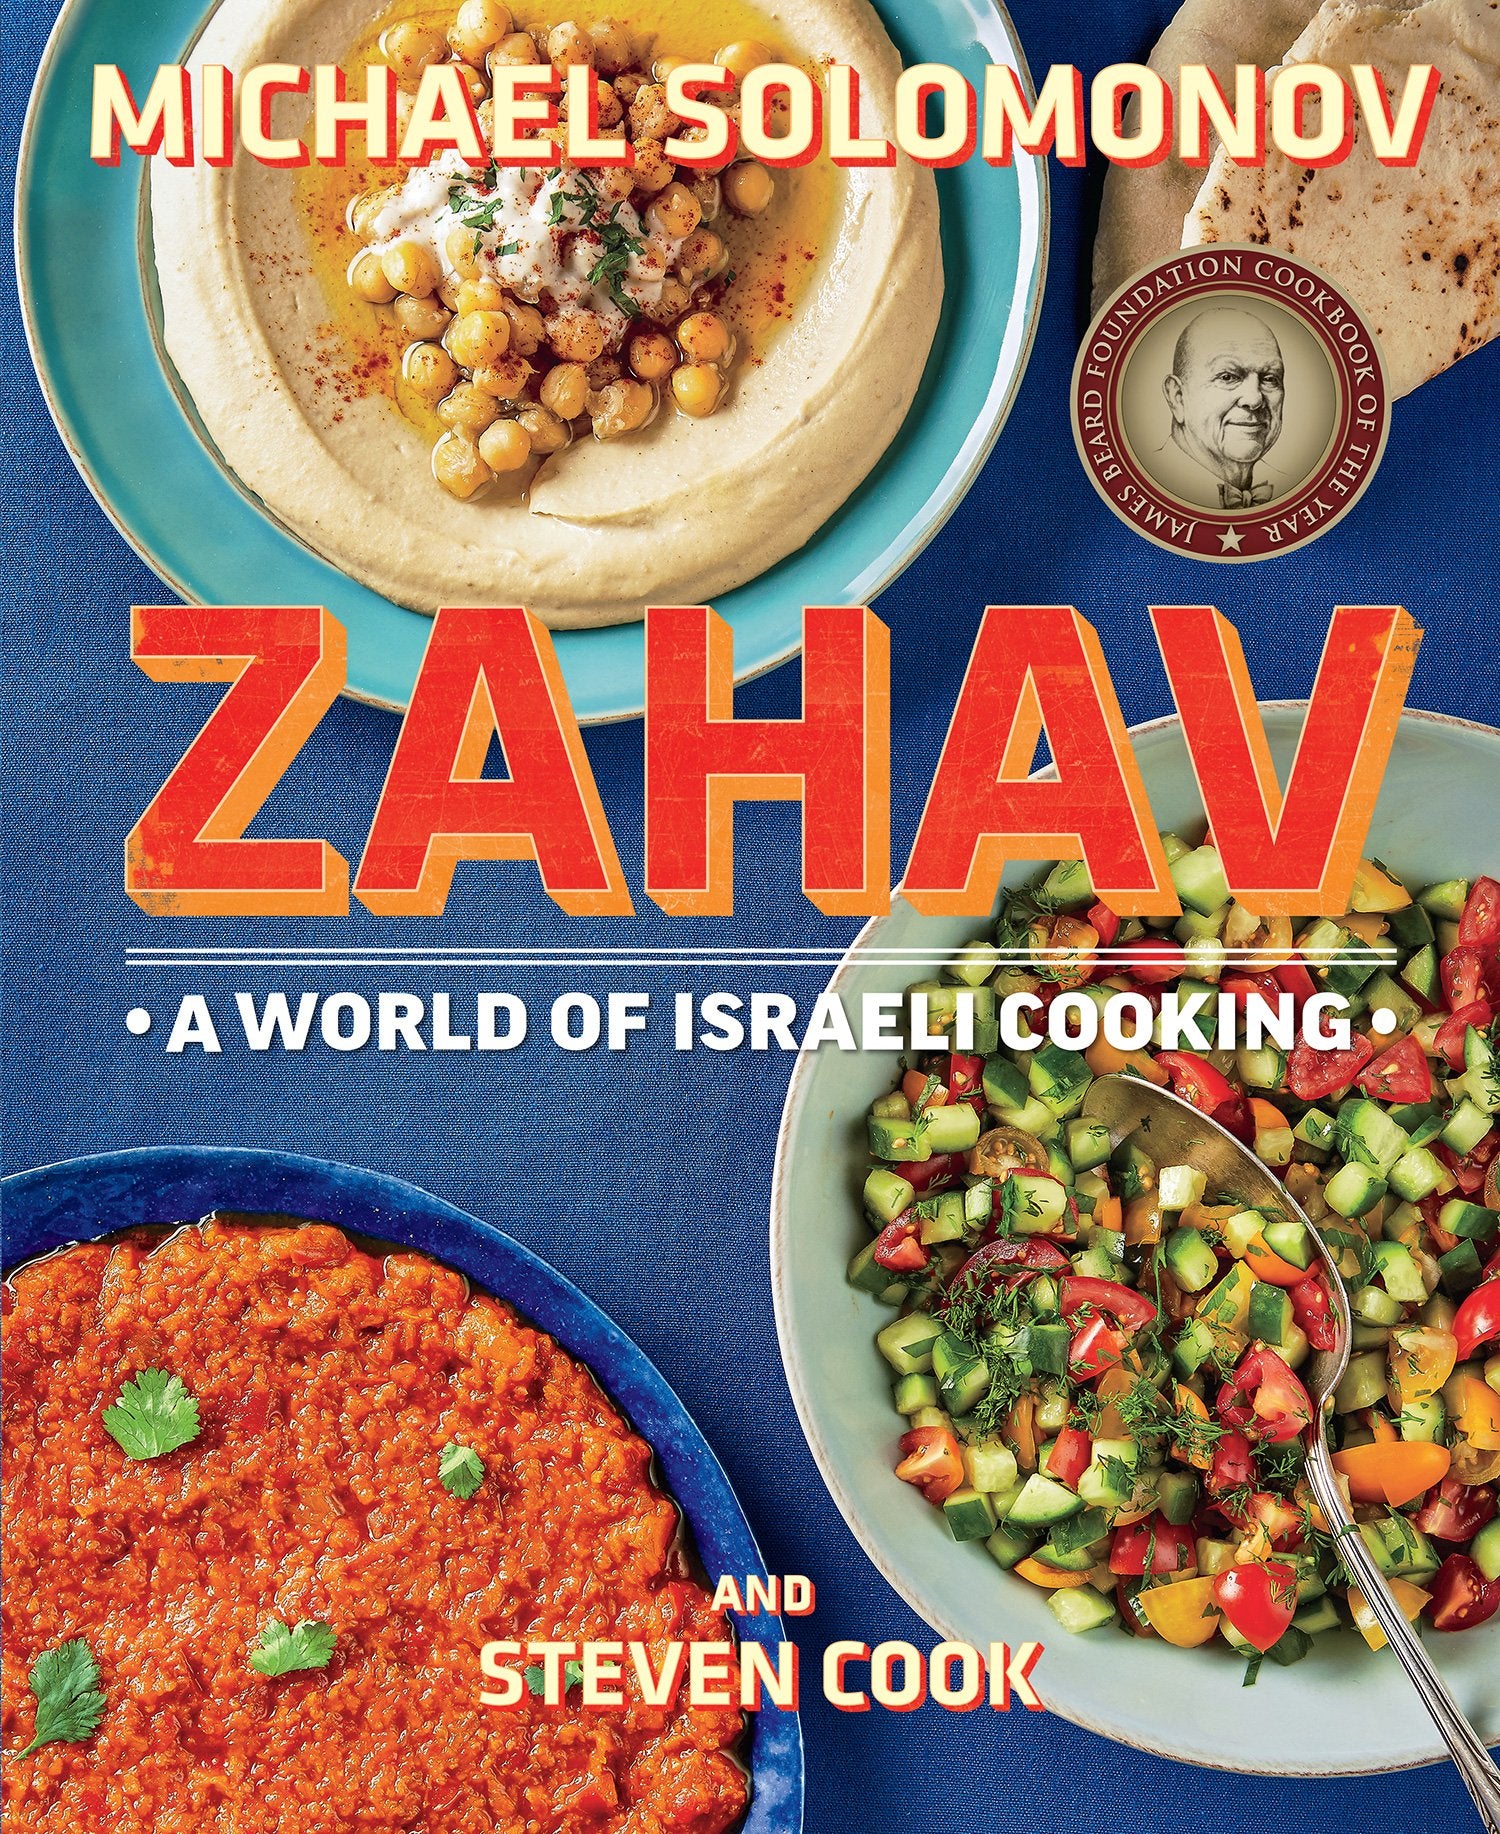 Zahav: A World of Israeli Cooking (Michael Solomonov, Steven Cook)